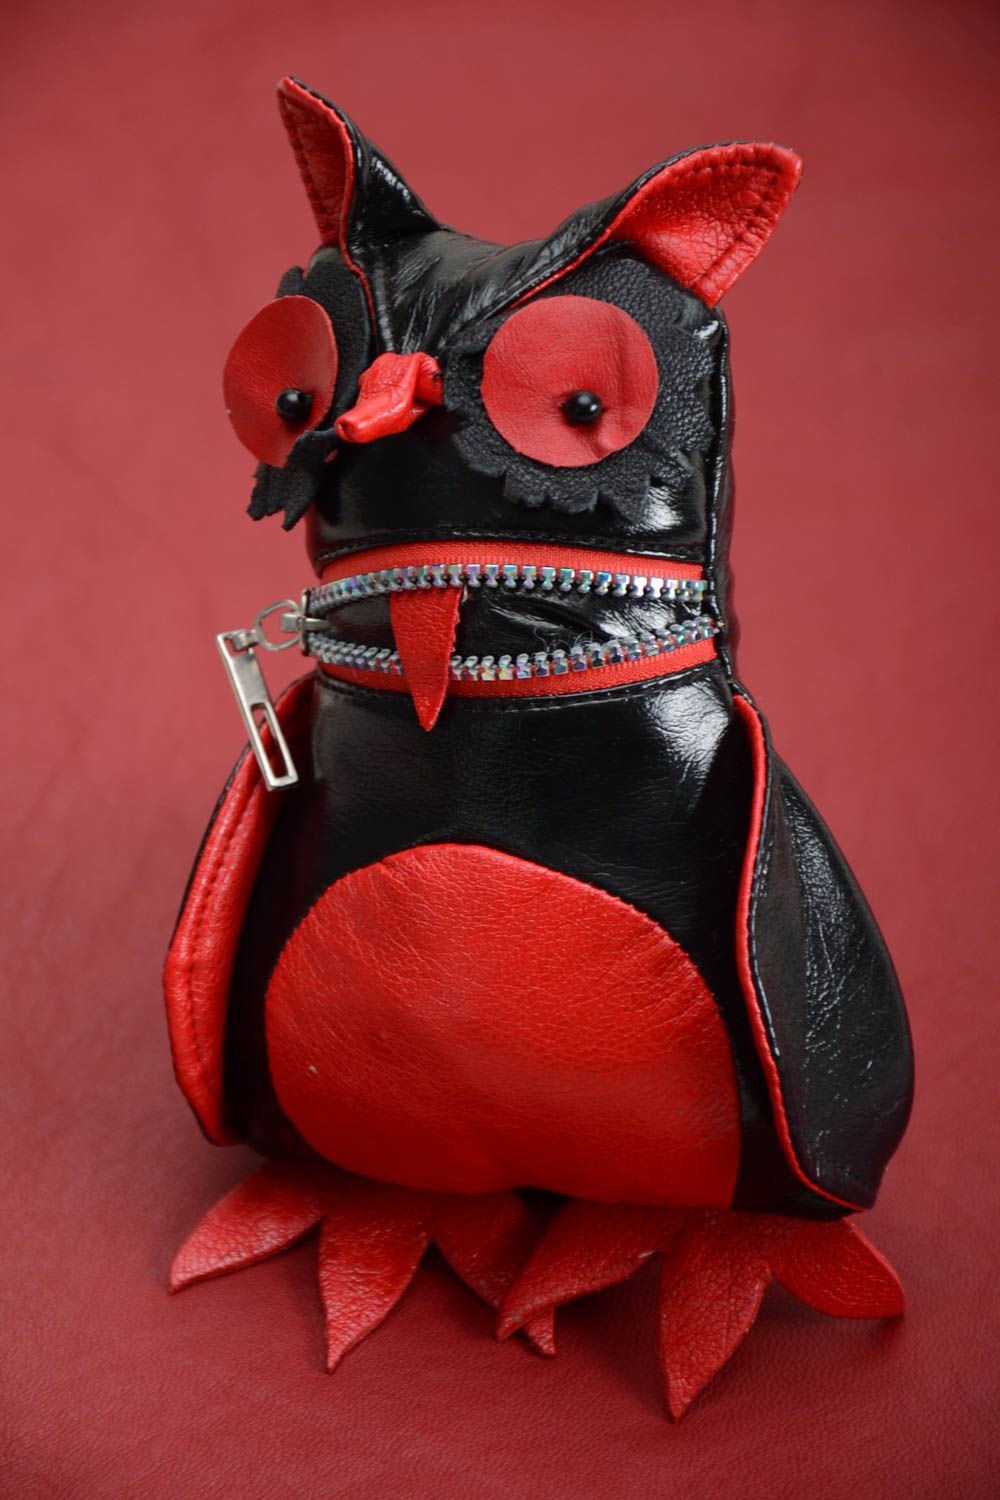 Игрушка ручной работы из кожи интерьерная игрушка декор для дома авторская фото 1